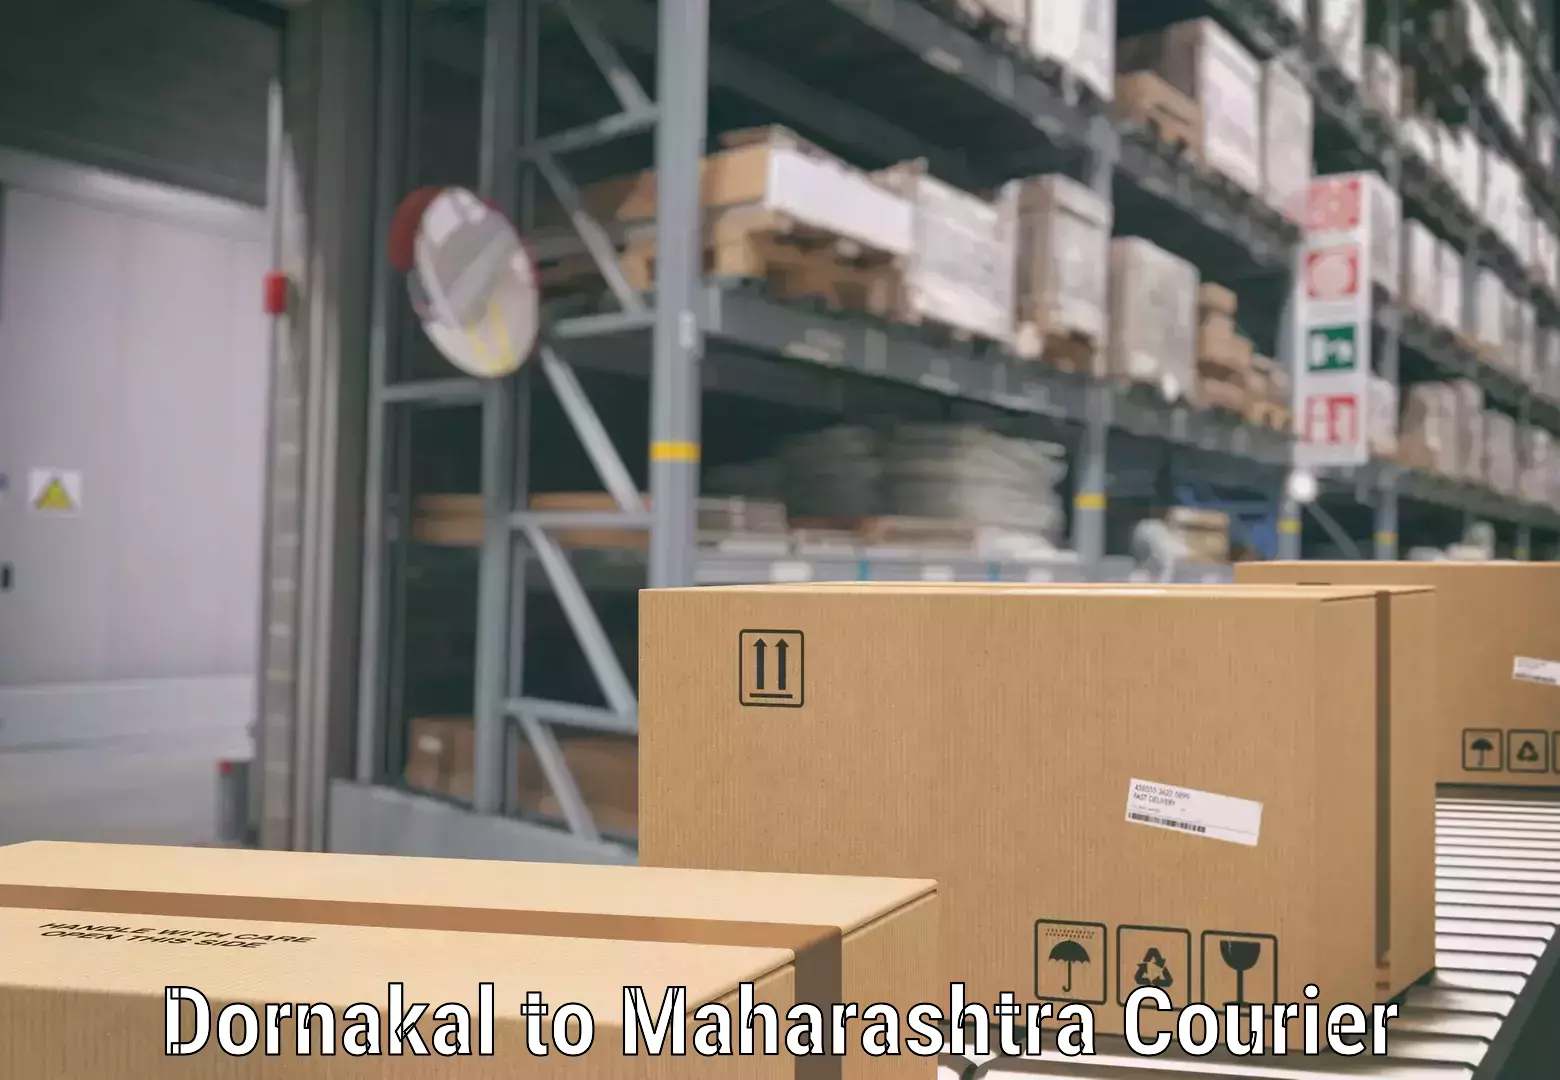 Baggage handling services Dornakal to Maharashtra